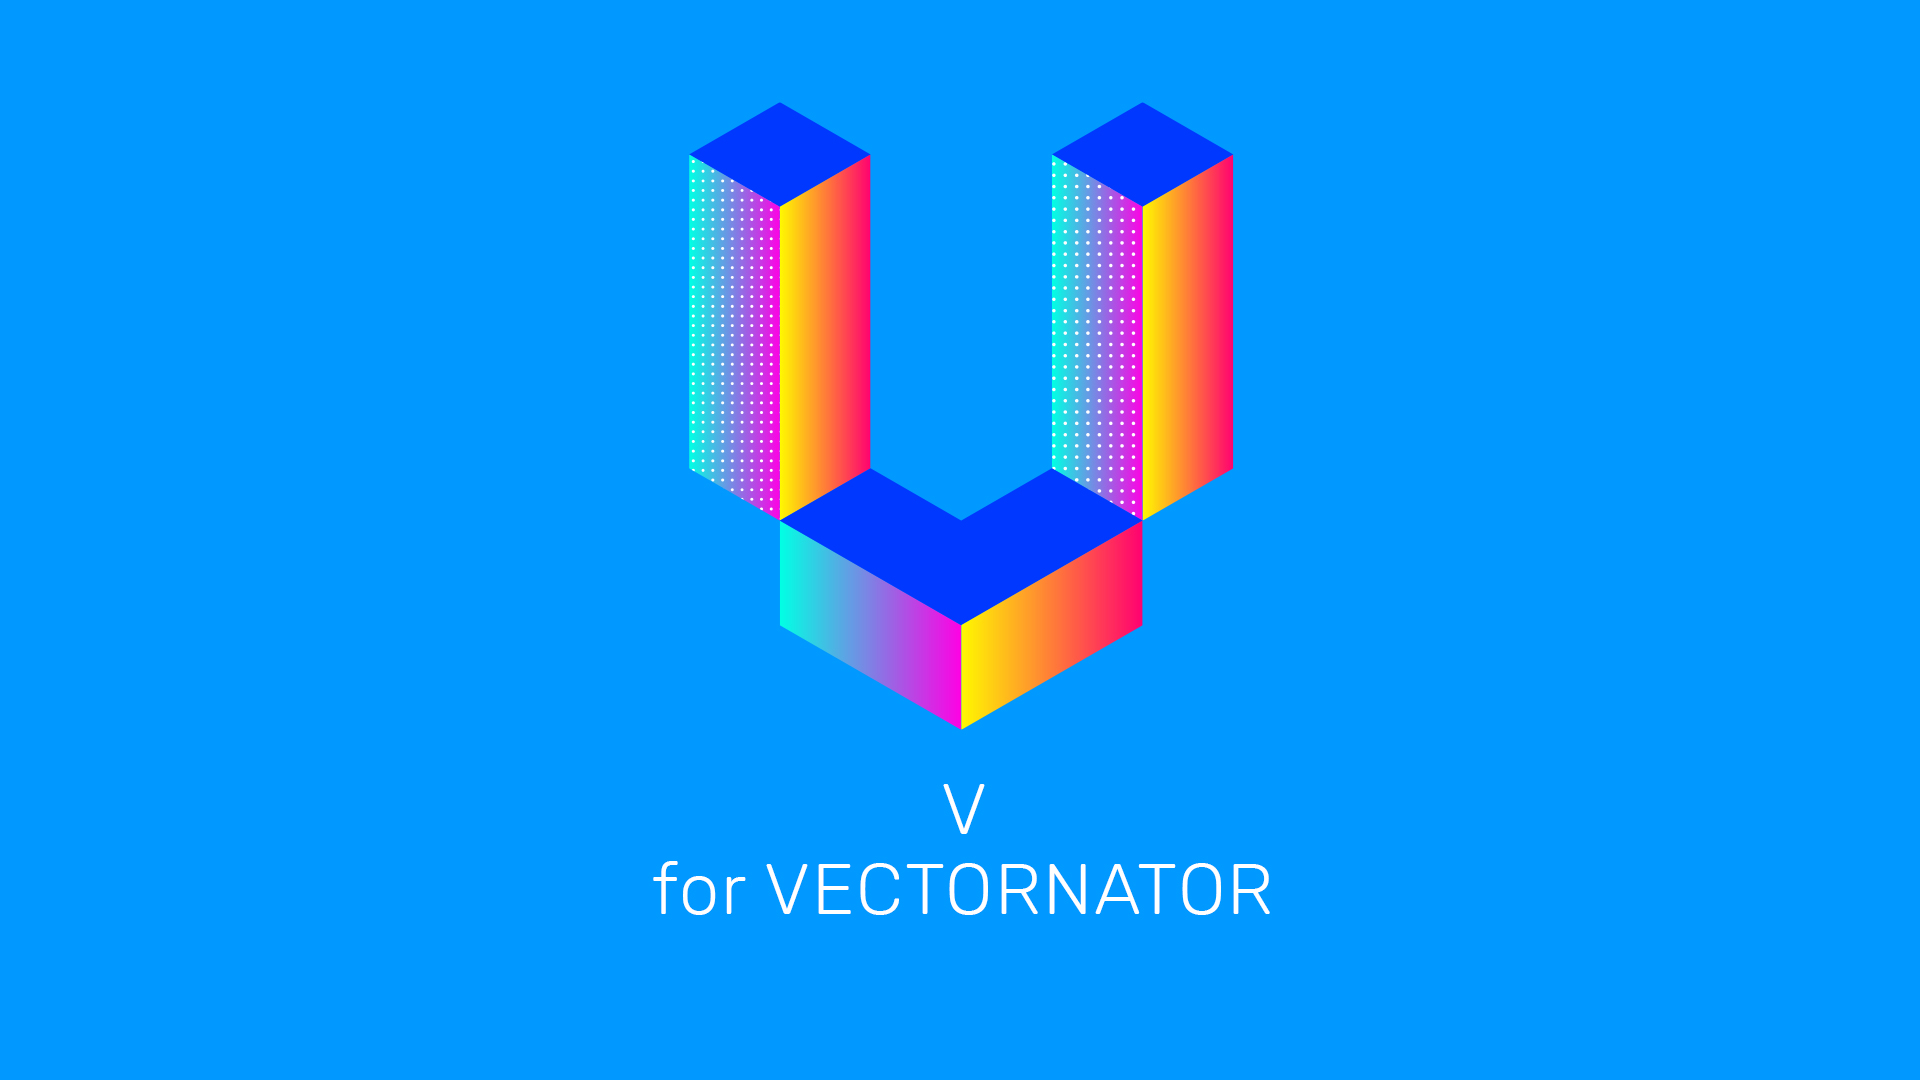 Isometric Grid Vectornator tutorial on iPad